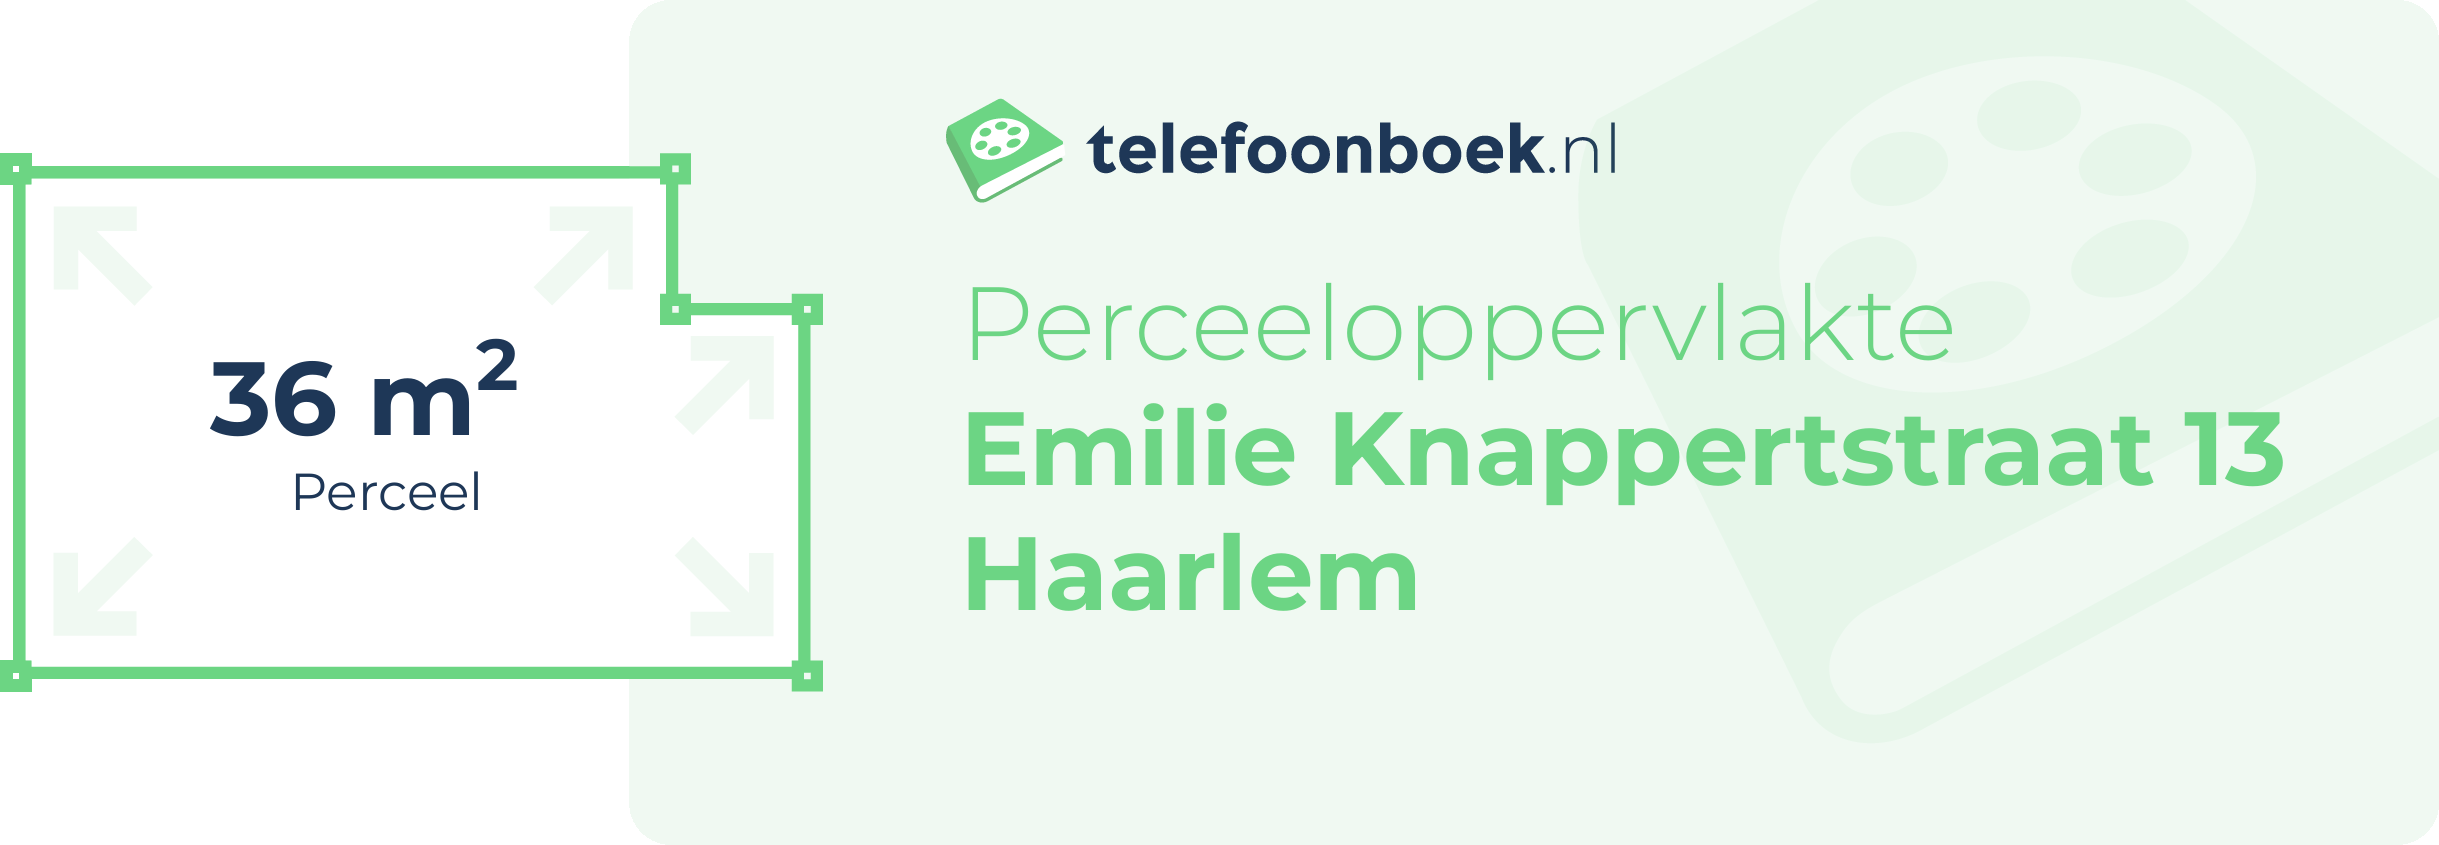 Perceeloppervlakte Emilie Knappertstraat 13 Haarlem